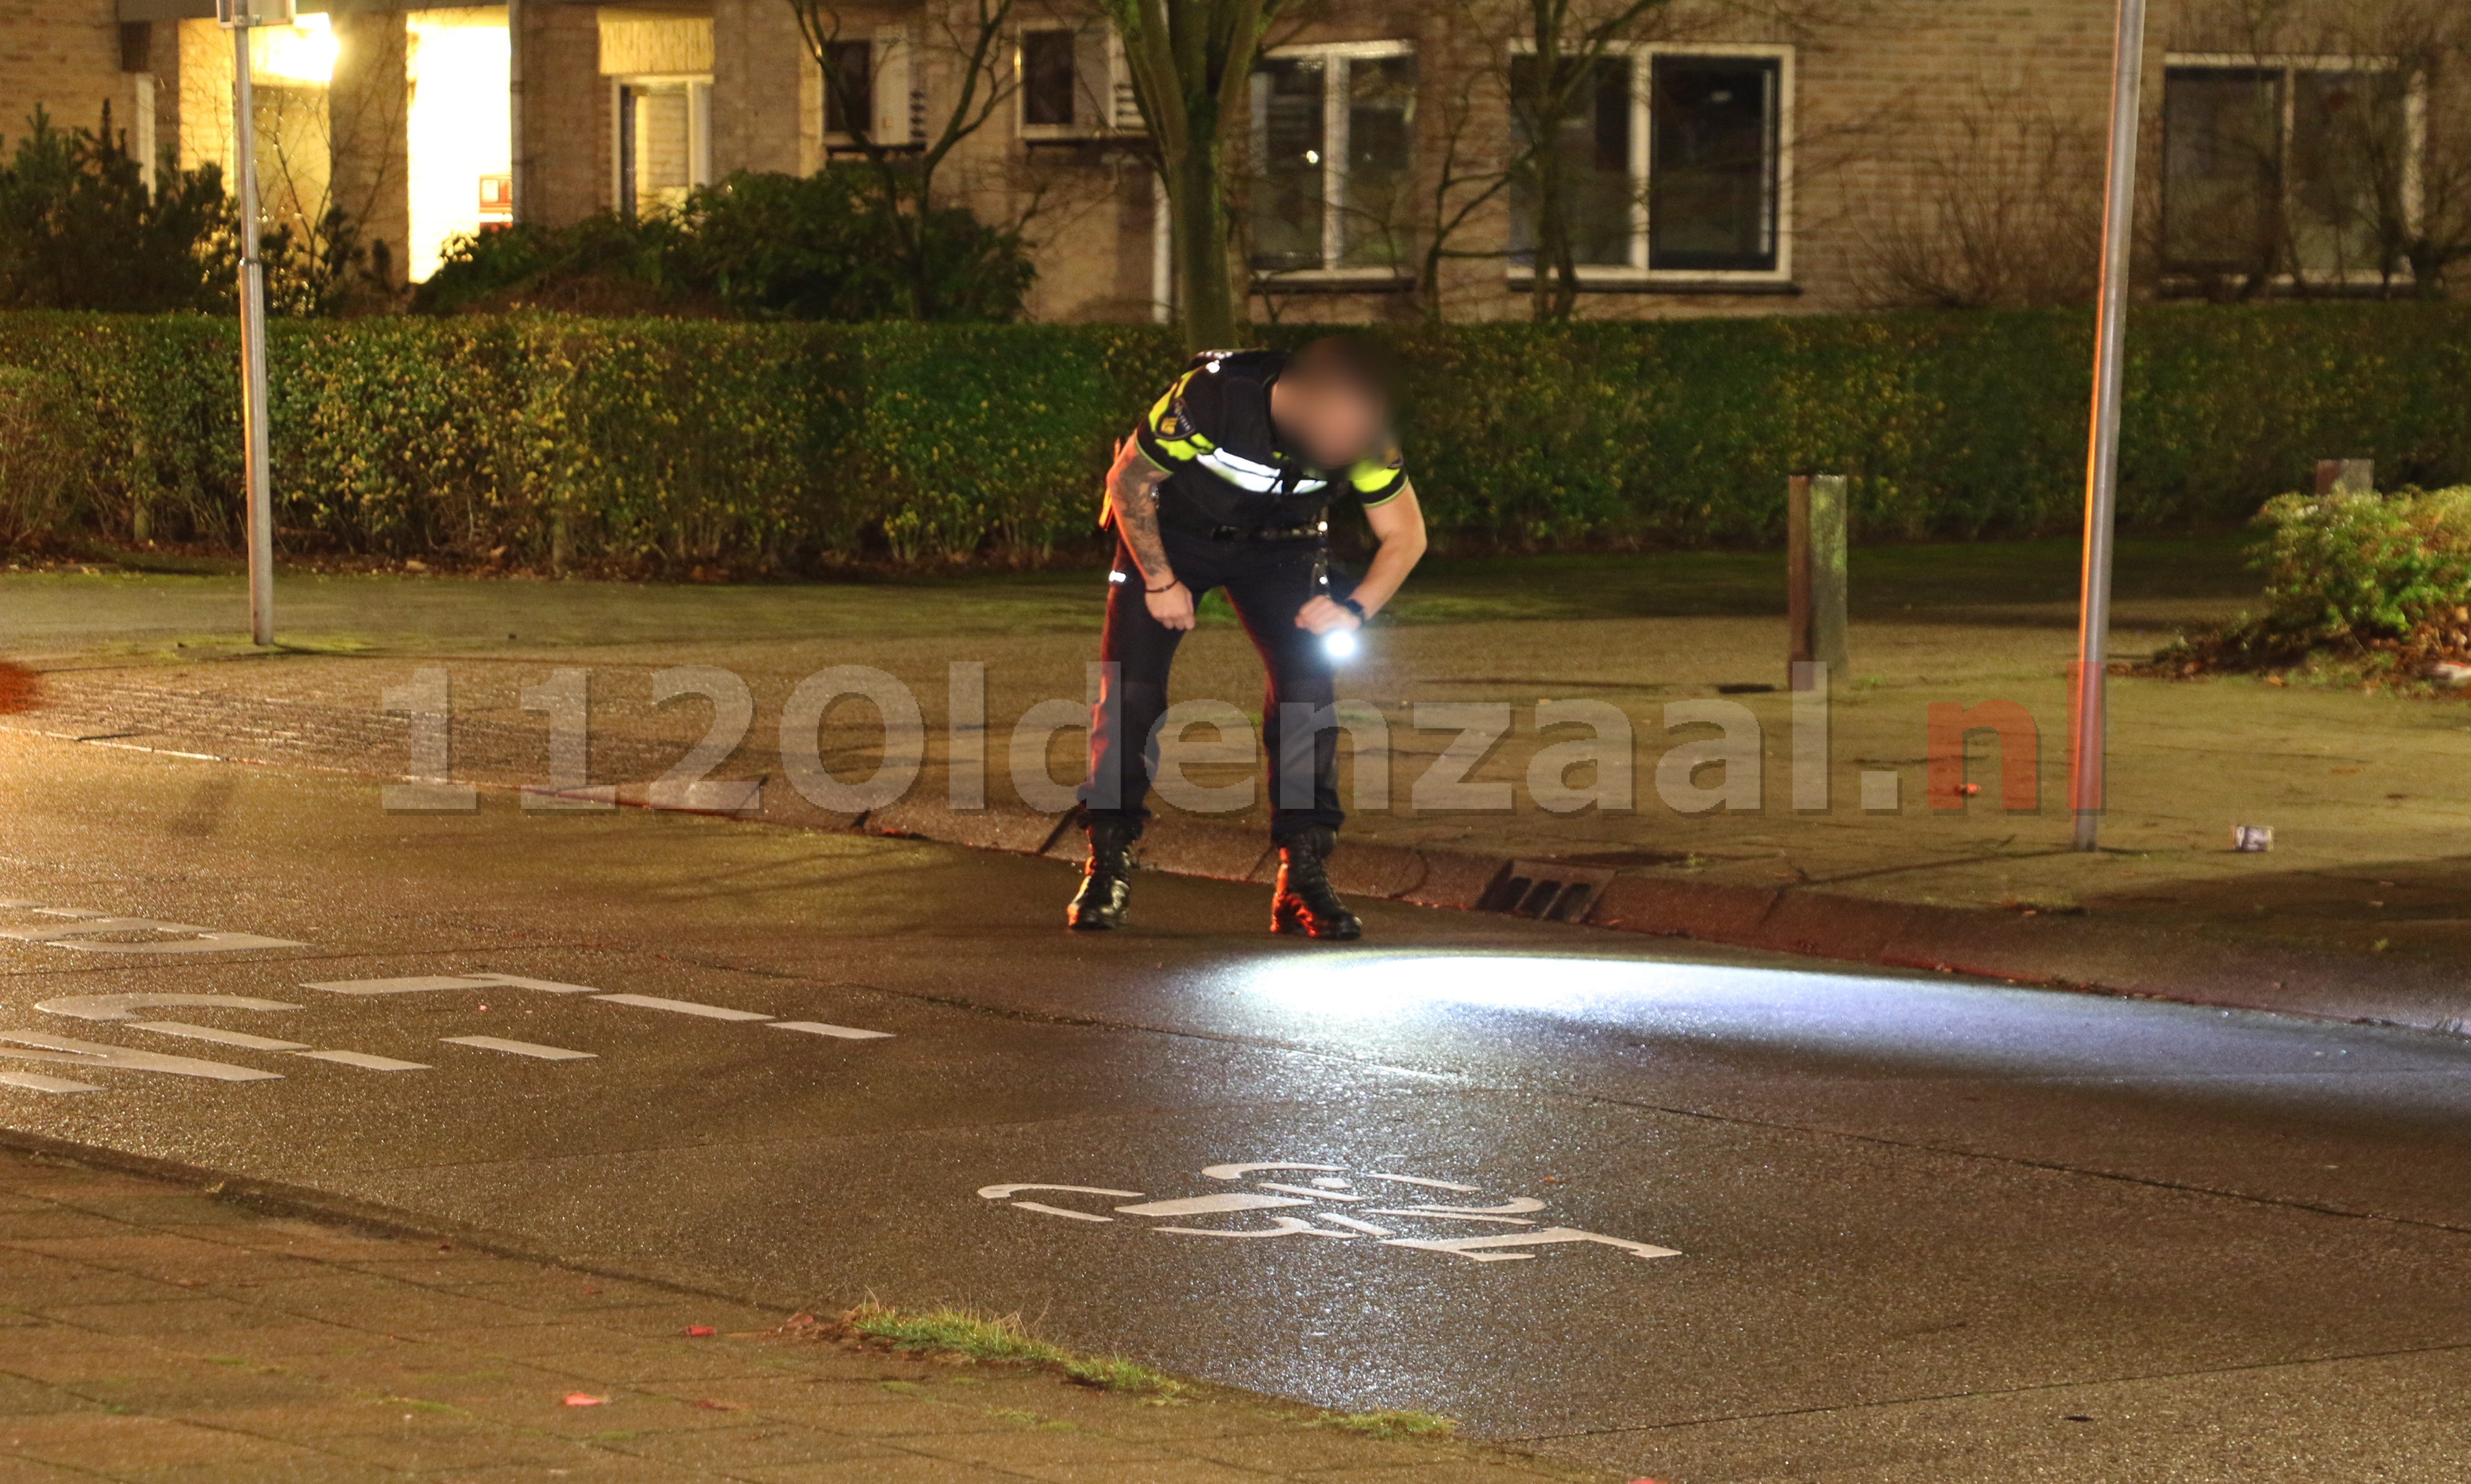 VIDEO: Poging ontvoering in Oldenzaal: politie zoekt busje